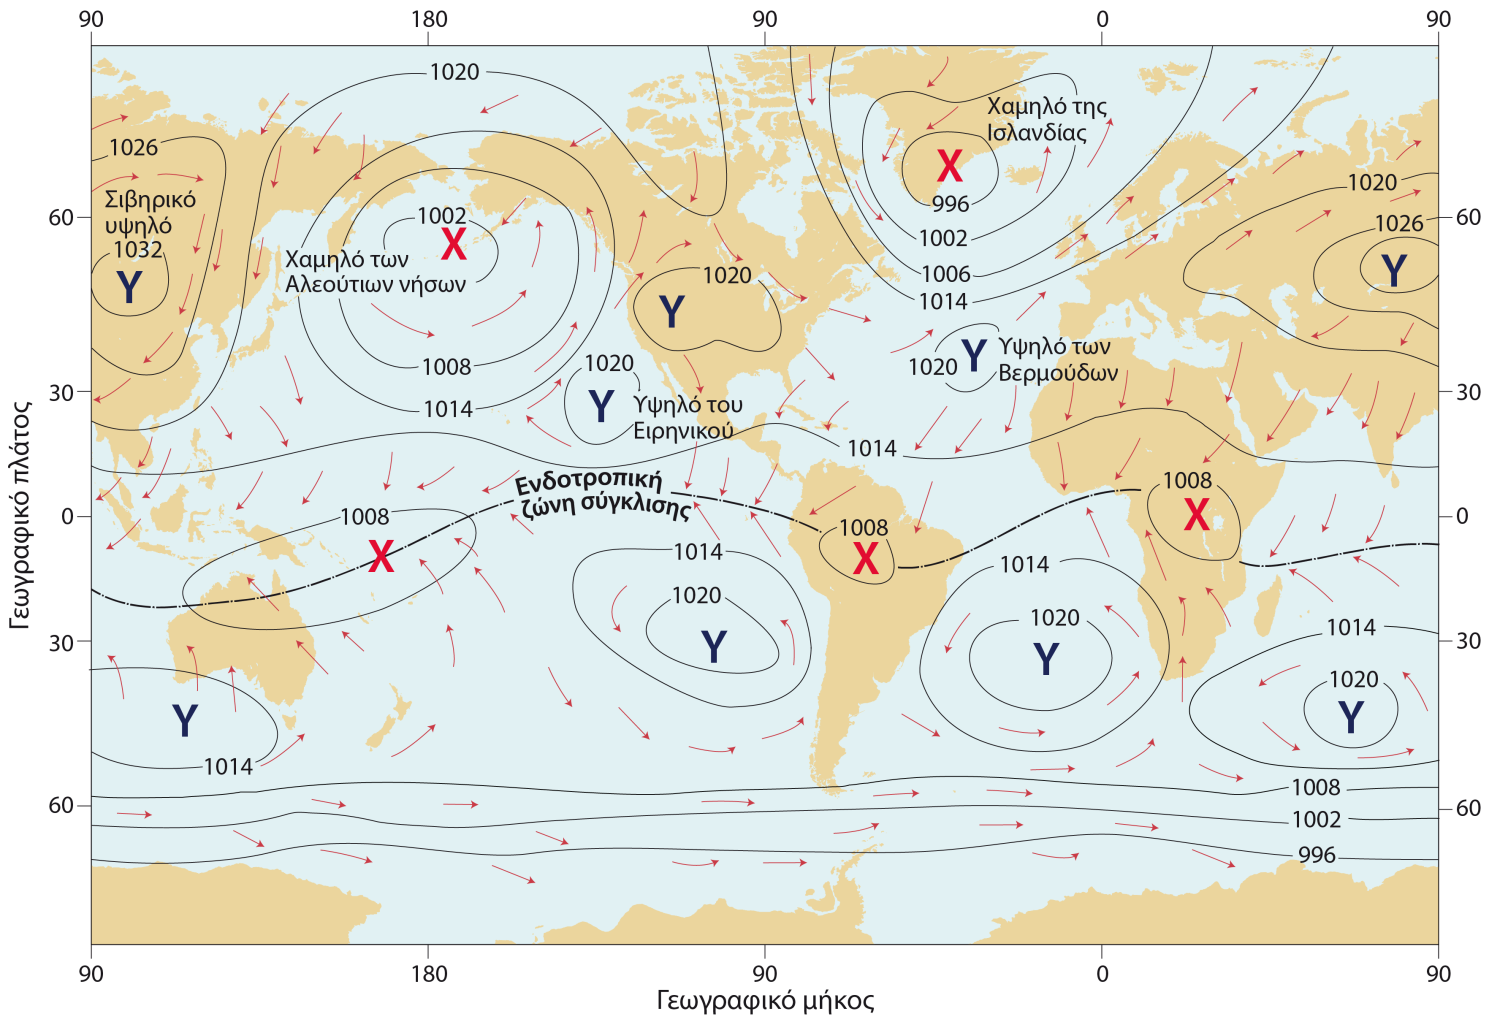 Σχήμα 1.2 Κλιματικός χάρτης (κατανομή της ατμοσφαιρικής πίεσης).